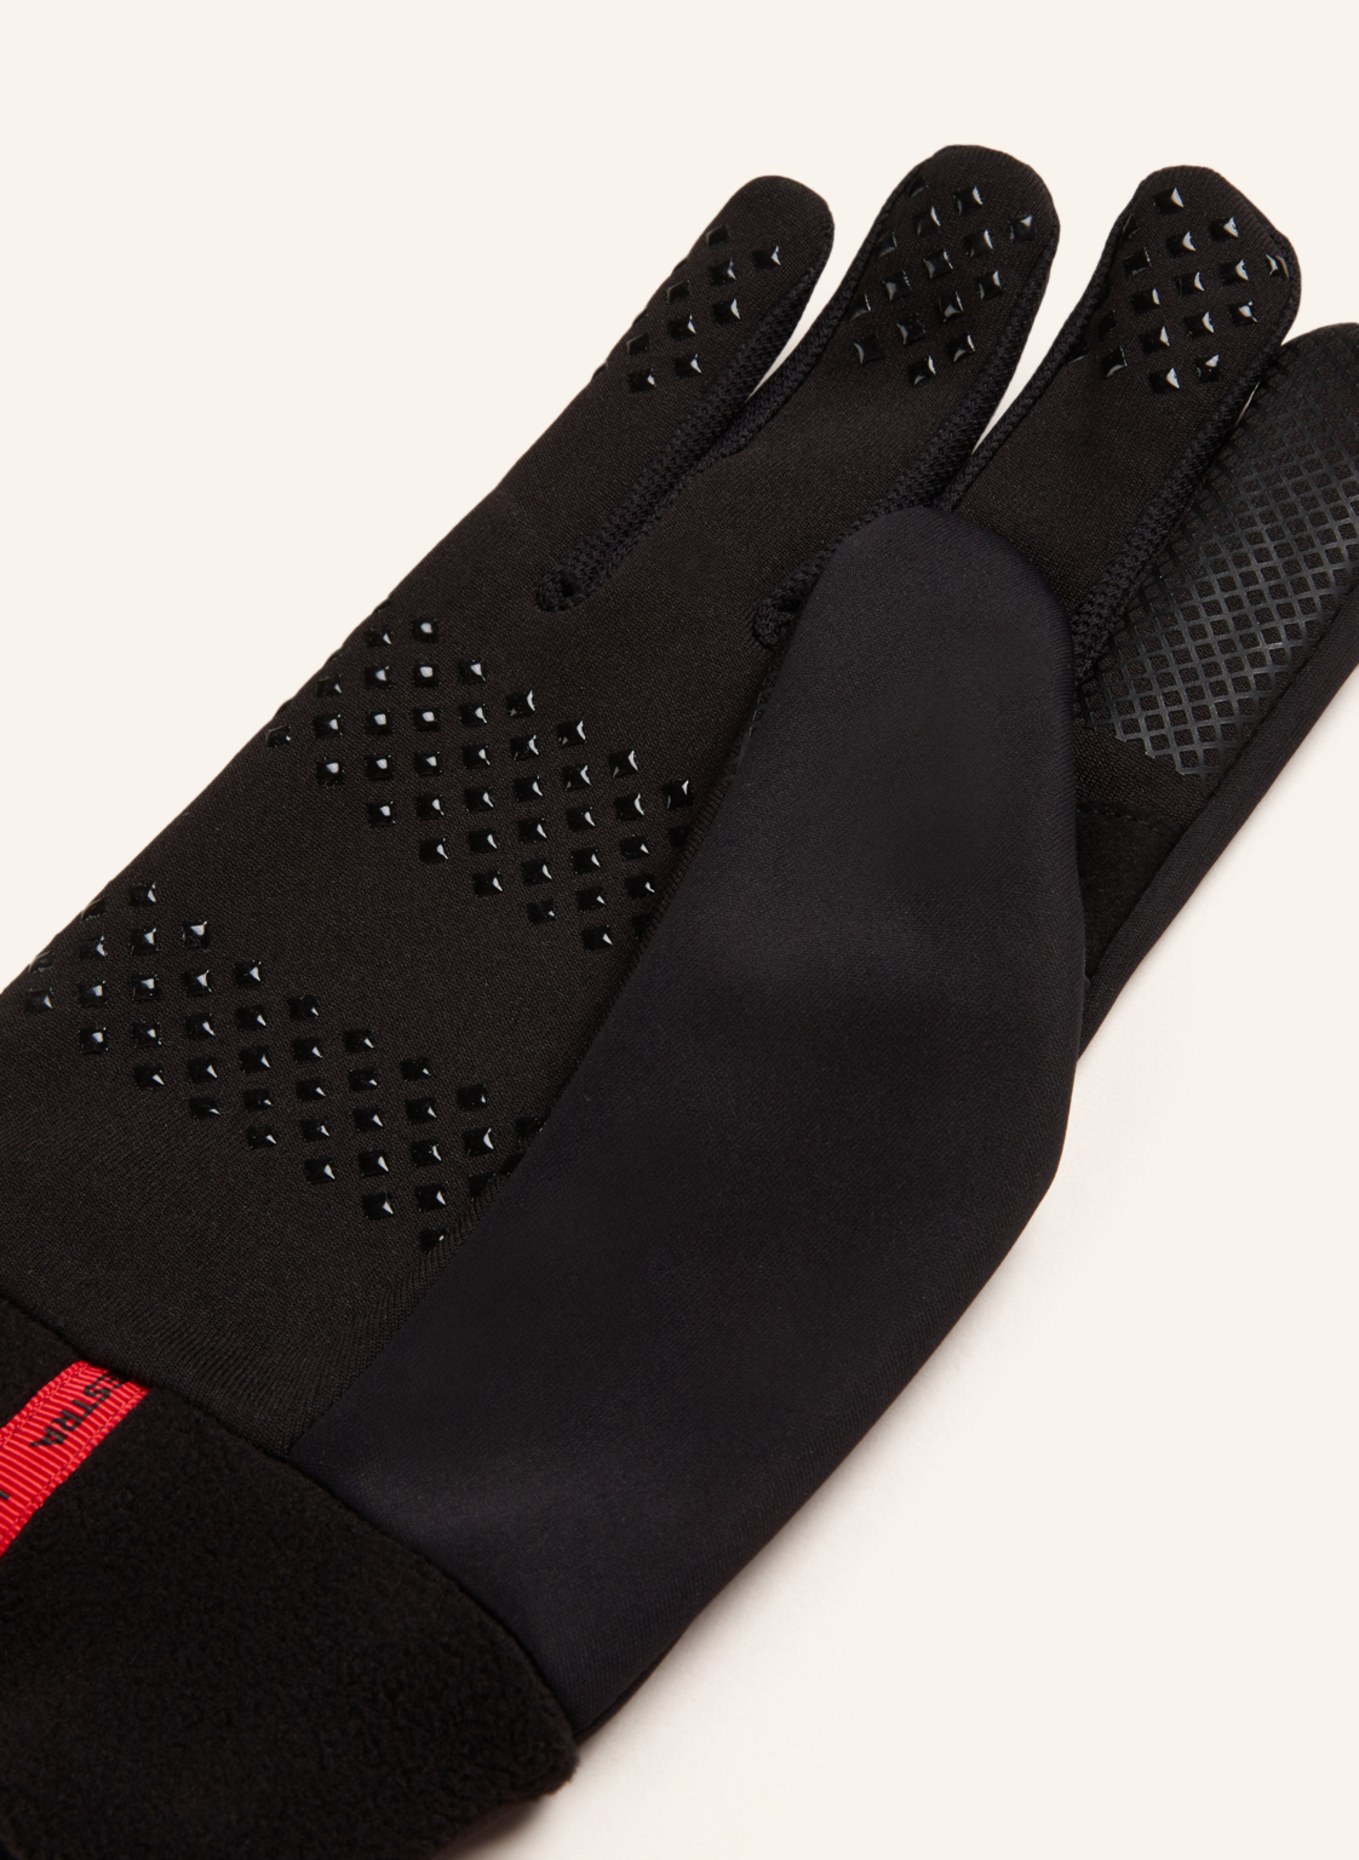 HESTRA Multisport-Handschuhe in mit schwarz Touchscreen-Funktion WINDSHIELD LINER